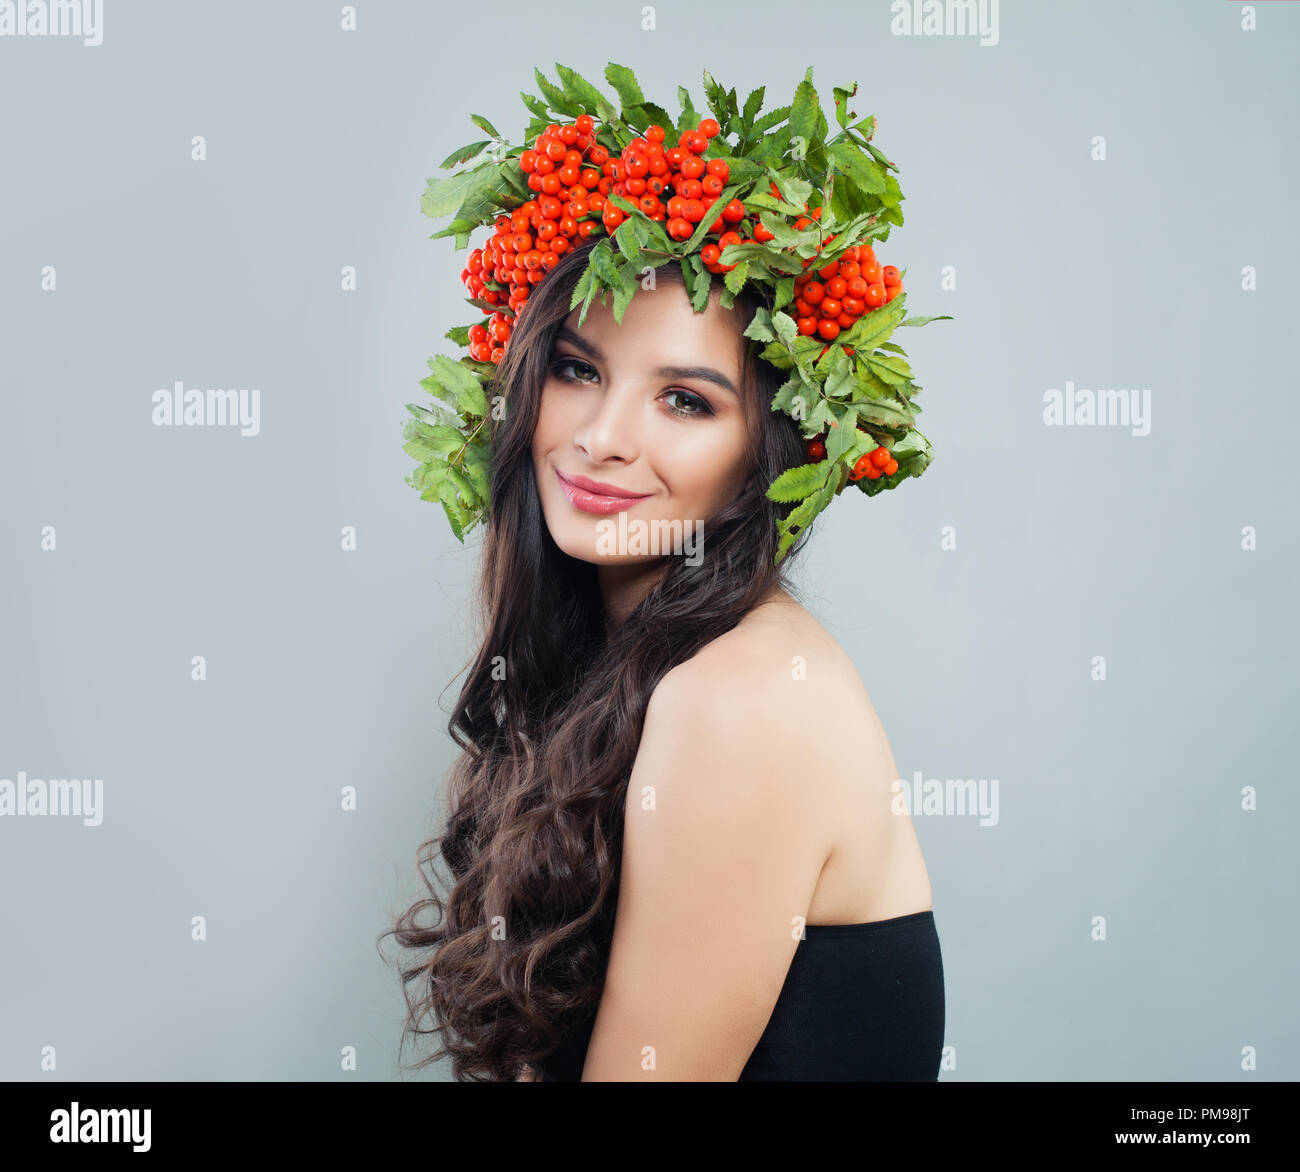 Schöne junge Frau in roten Beeren und grüne Blätter Kranz, Porträt Stockfoto